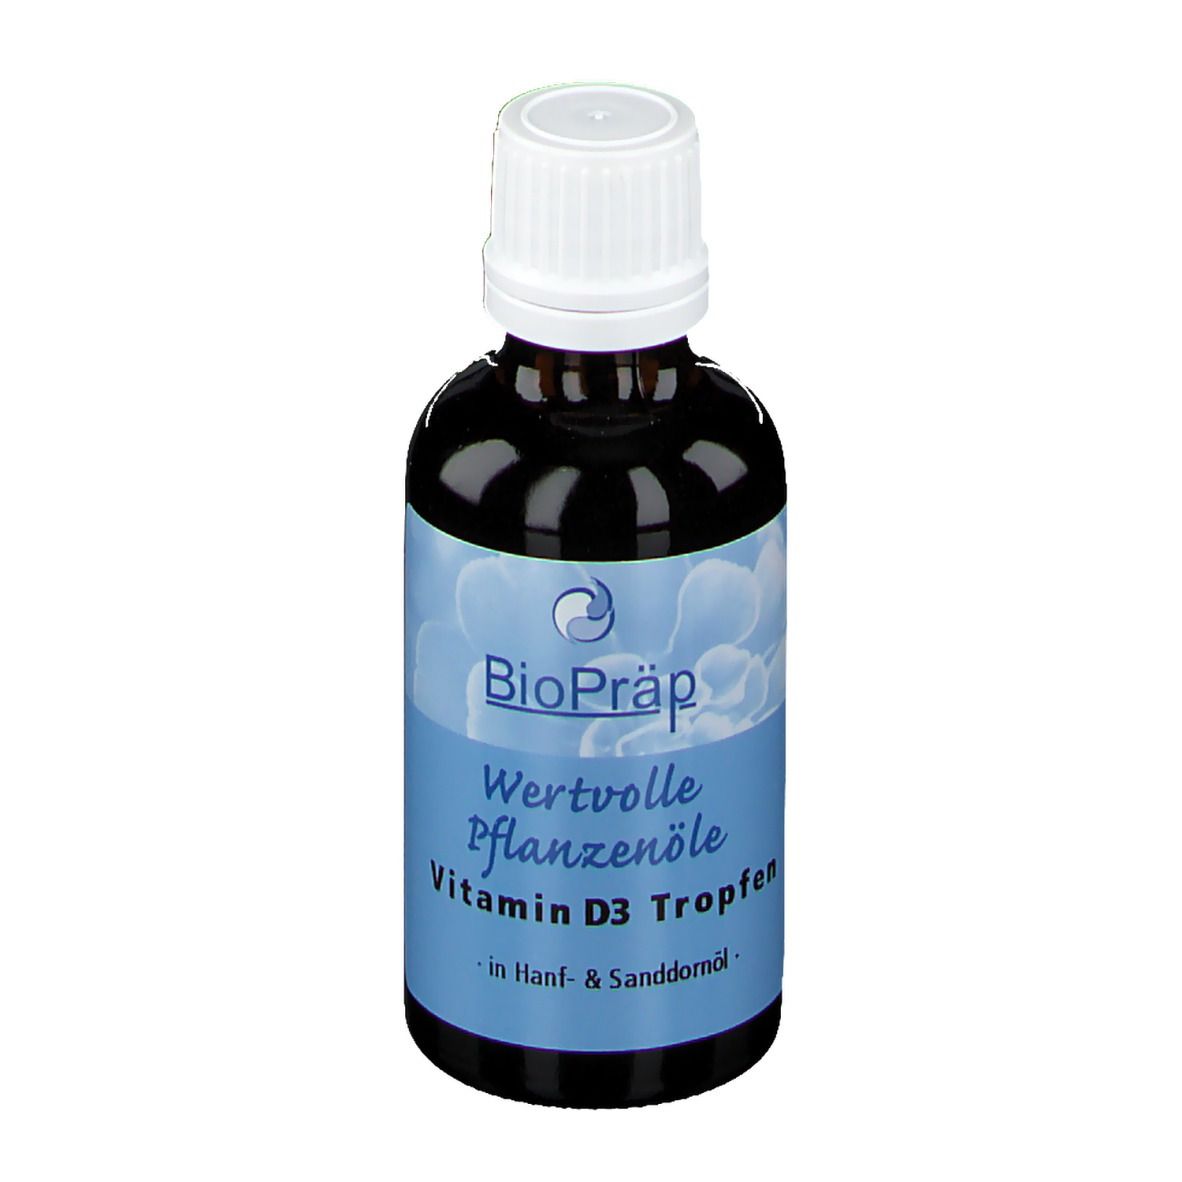 BioPräp Vitamin D3 Tropfen